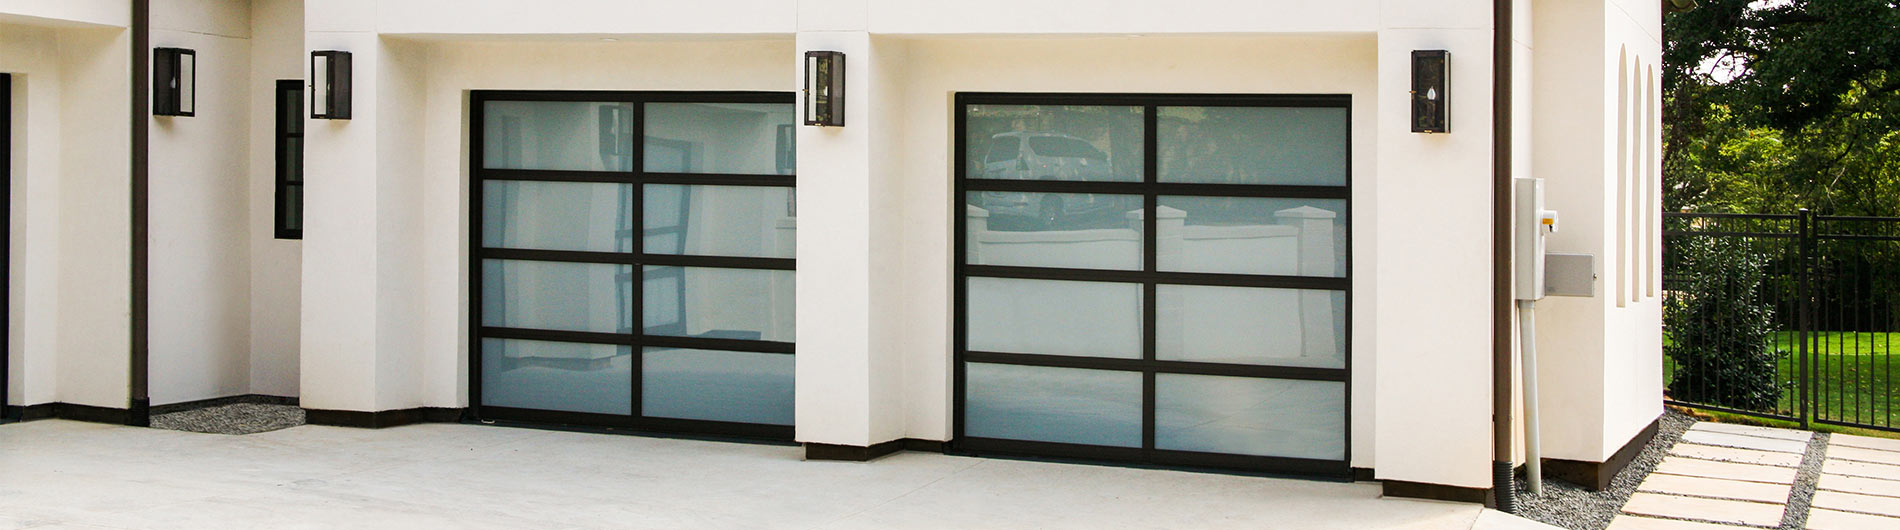 Full-View Insulated Garage Doors